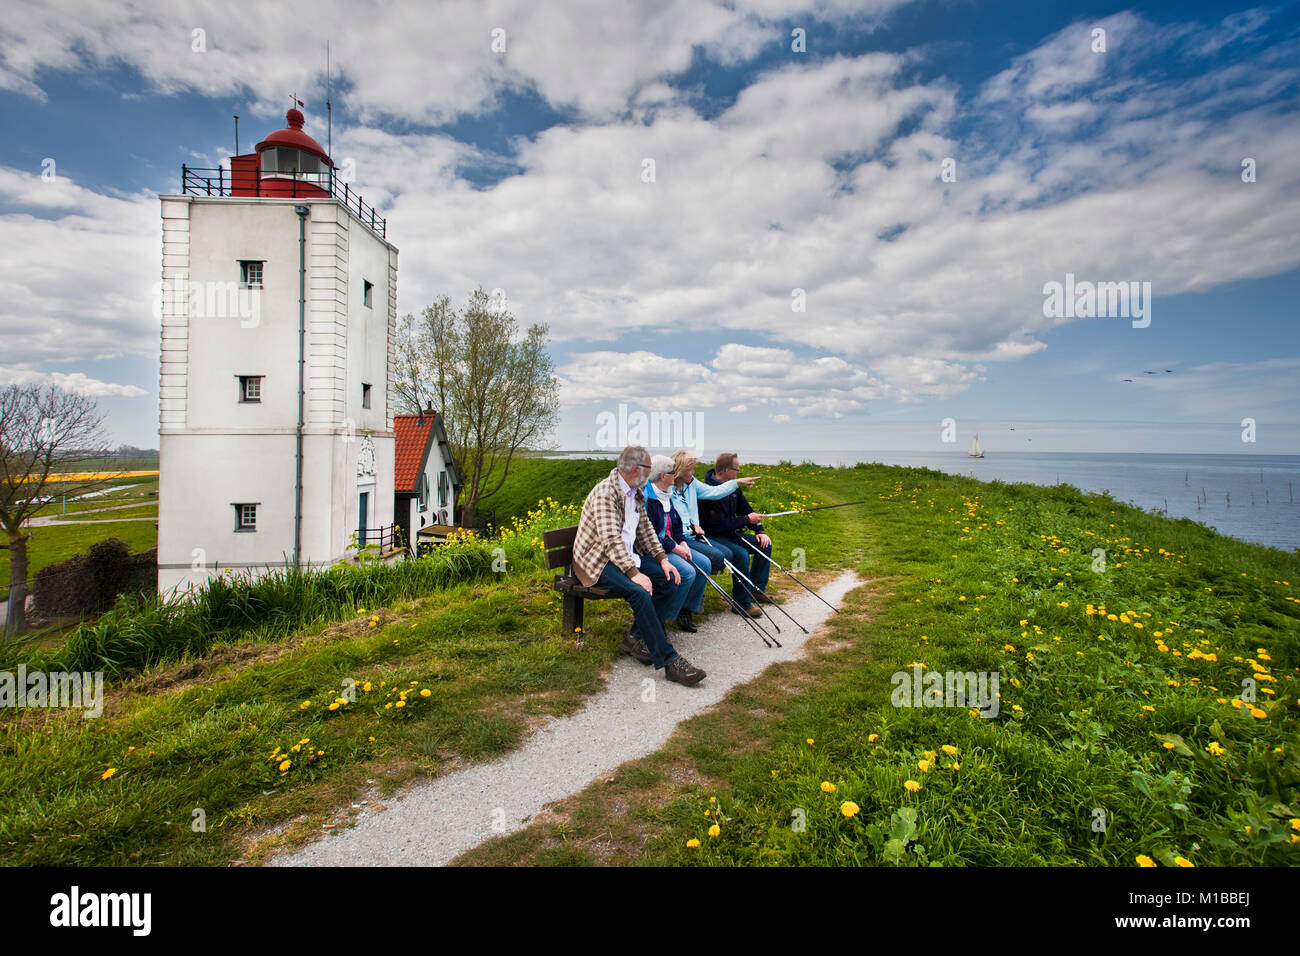 Die Niederlande, Olderhörn genannt, Wanderer auf der Bank in der Nähe von ehemaligen Leuchtturm am See namens IJsselmeer. Stockfoto